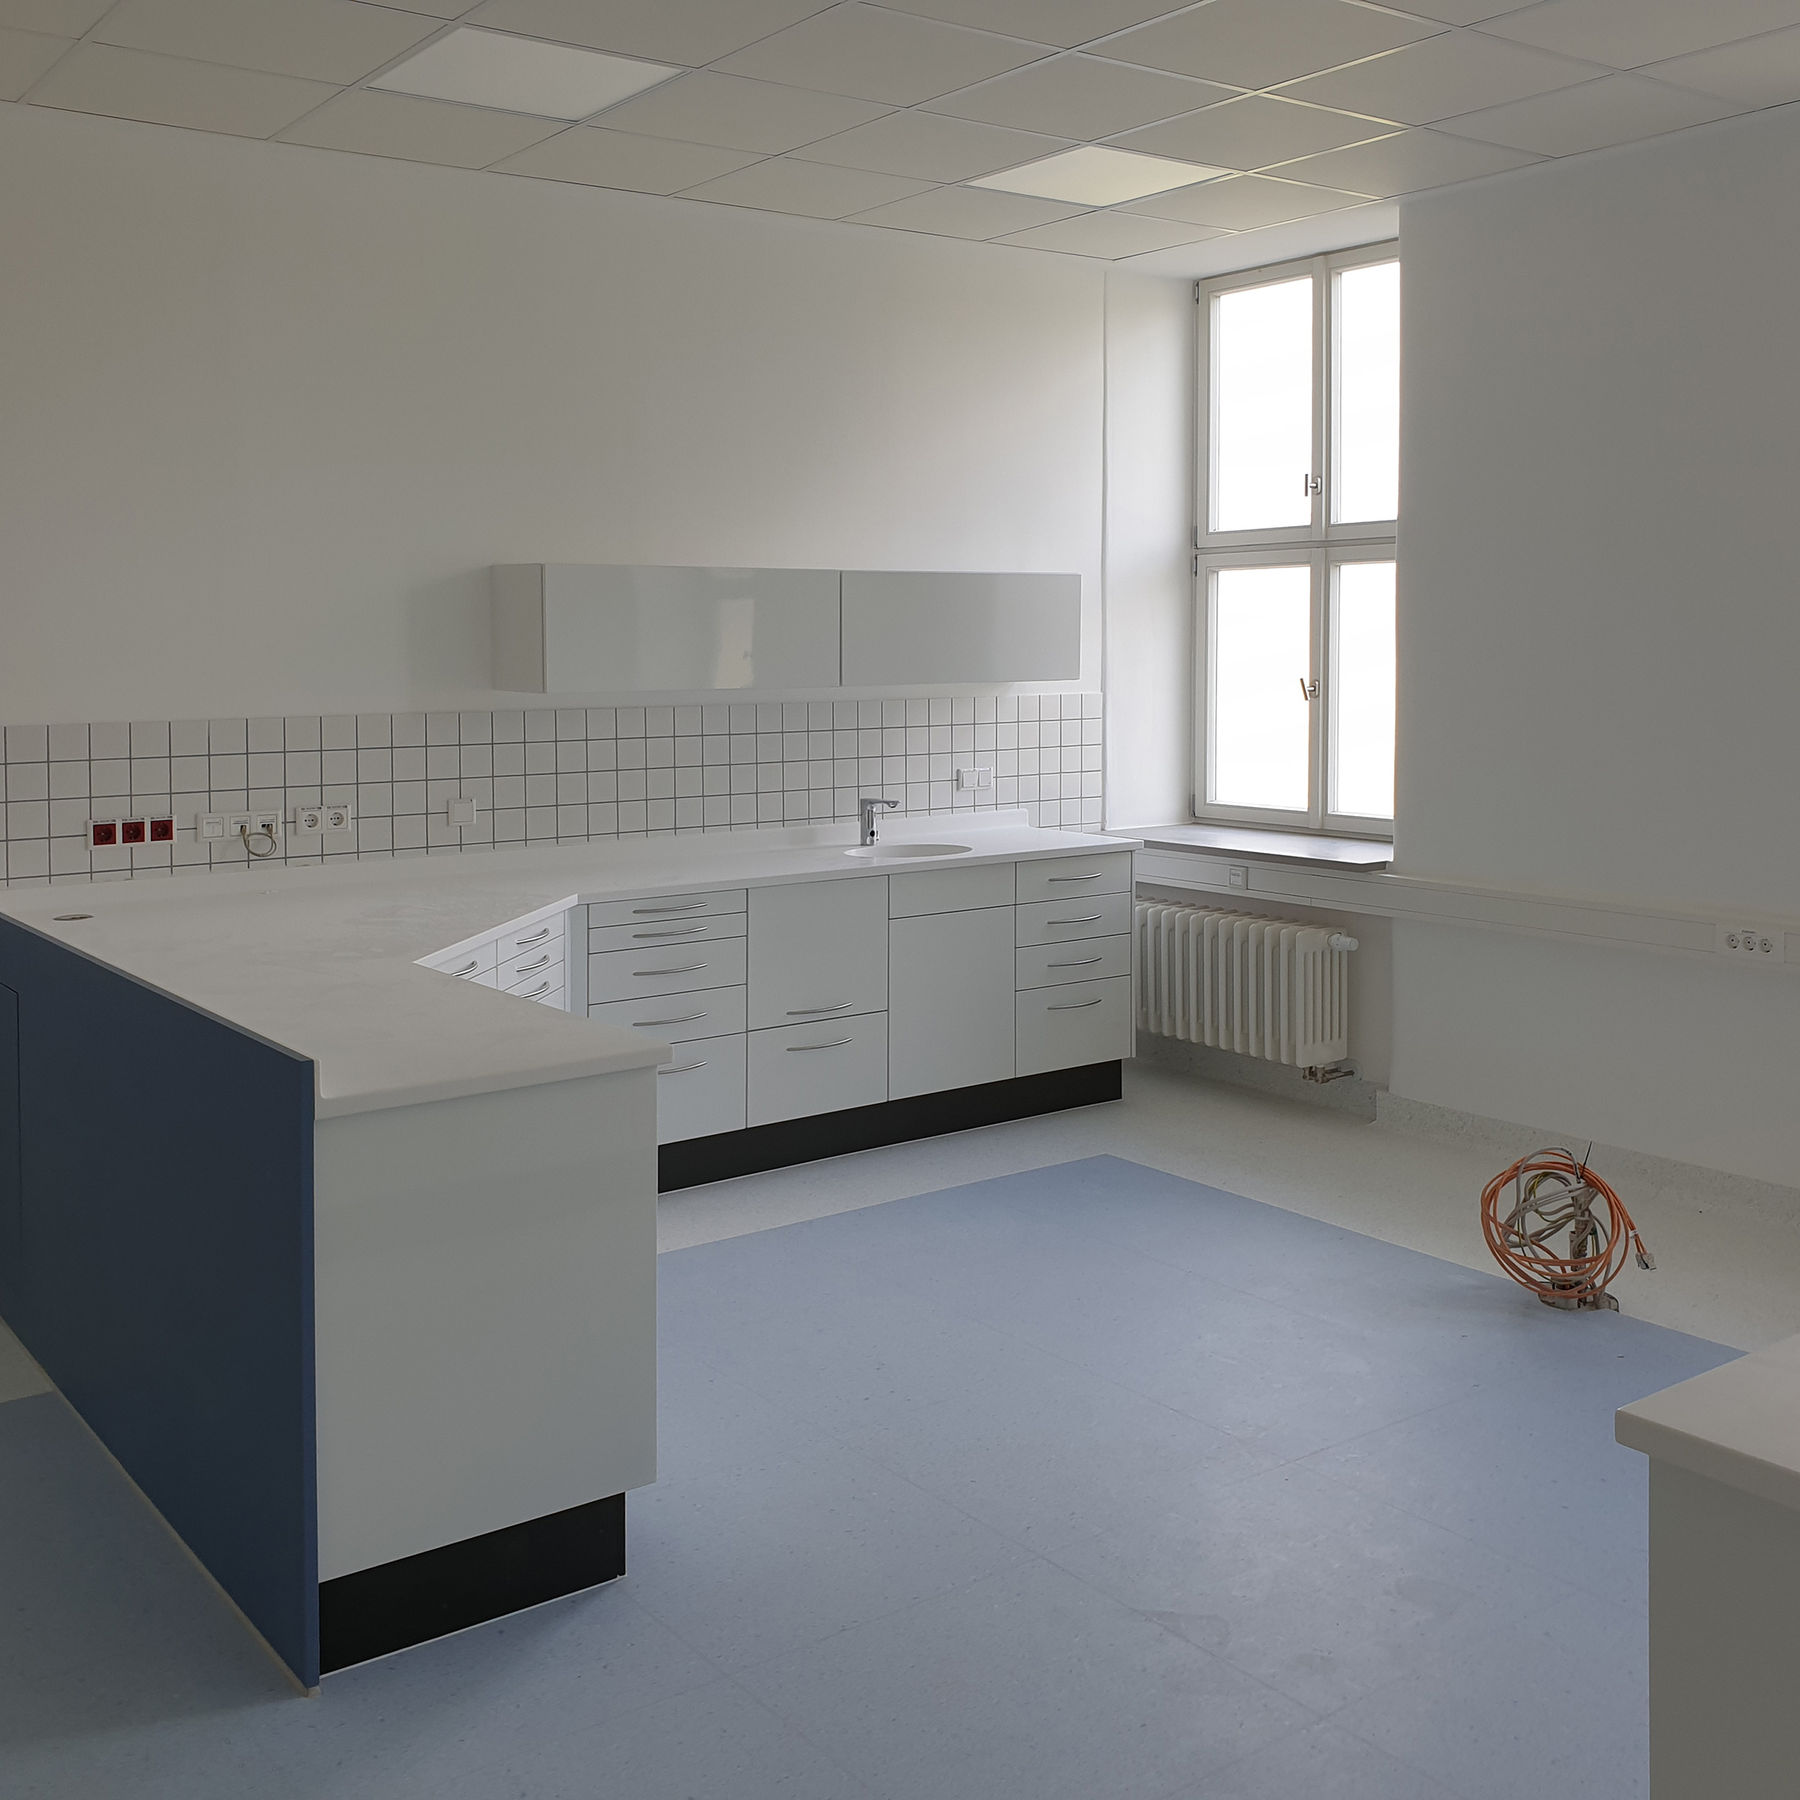 Blick in einen zahnmedizinischen Behandlungsraum des Sanitätsversorgungszentrums im Gebäude 2 – dort wo das Kabel liegt, wird demnächst ein Zahnarztstuhl montiert werden © 2021 SBL Neubrandenburg